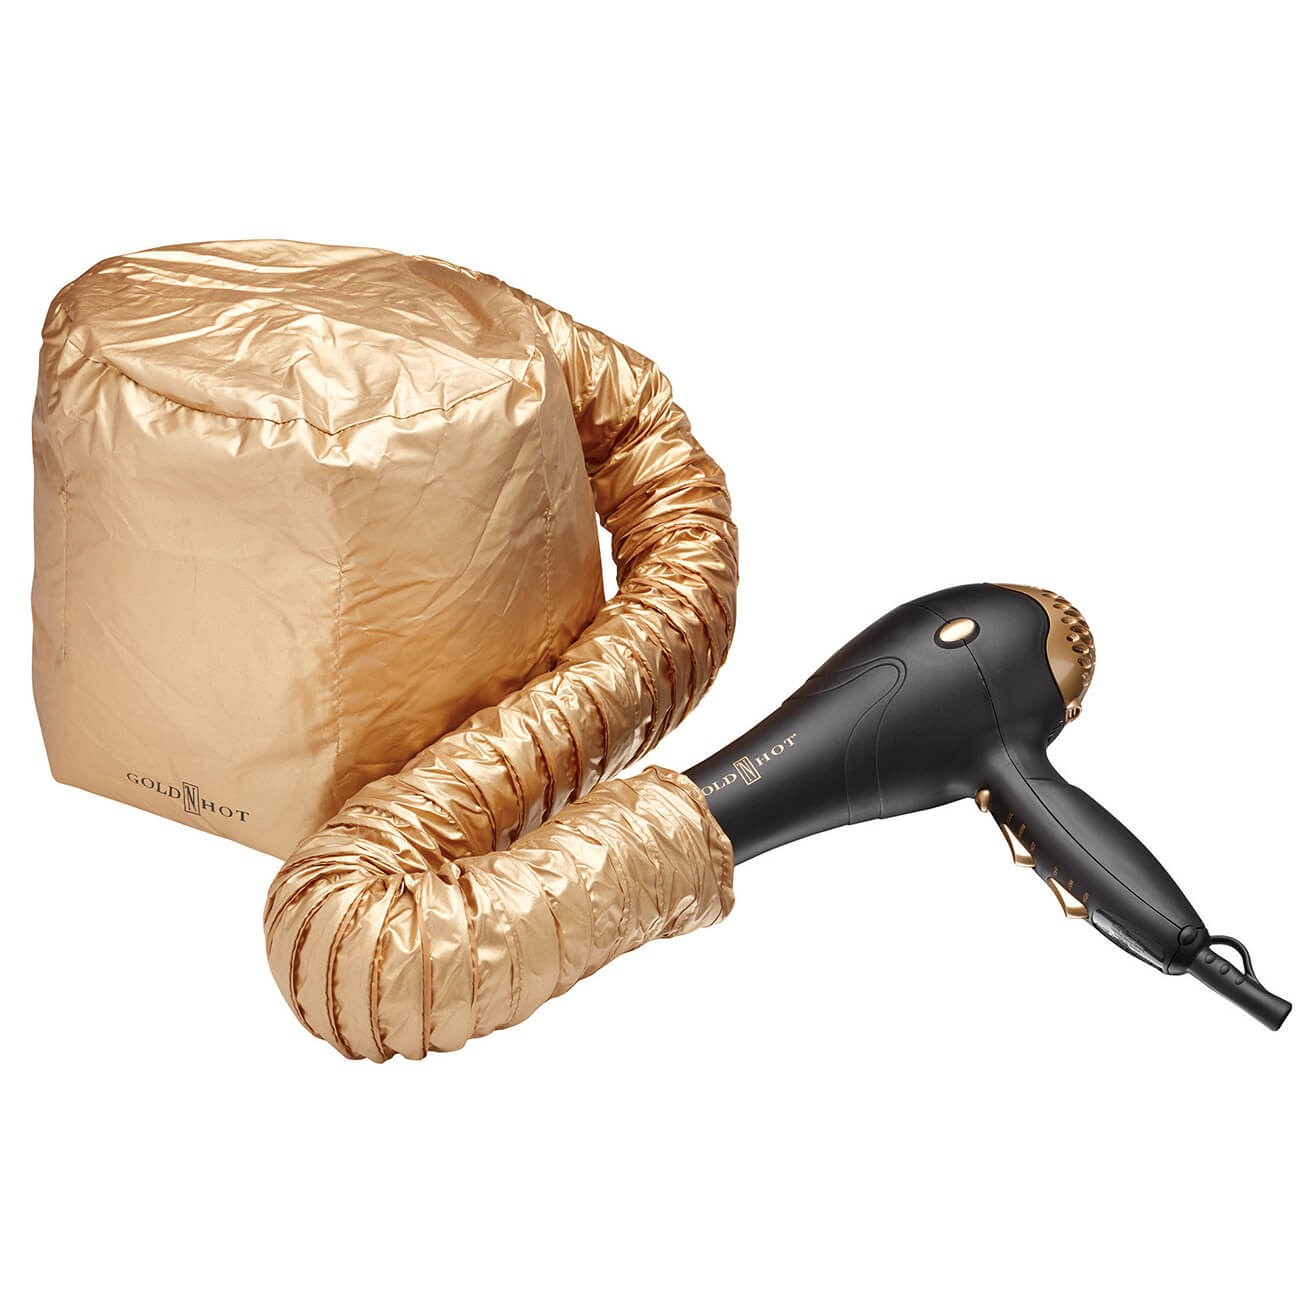 Gold ‘N Hot Professional Jet Bonnet® Dryer Attachment